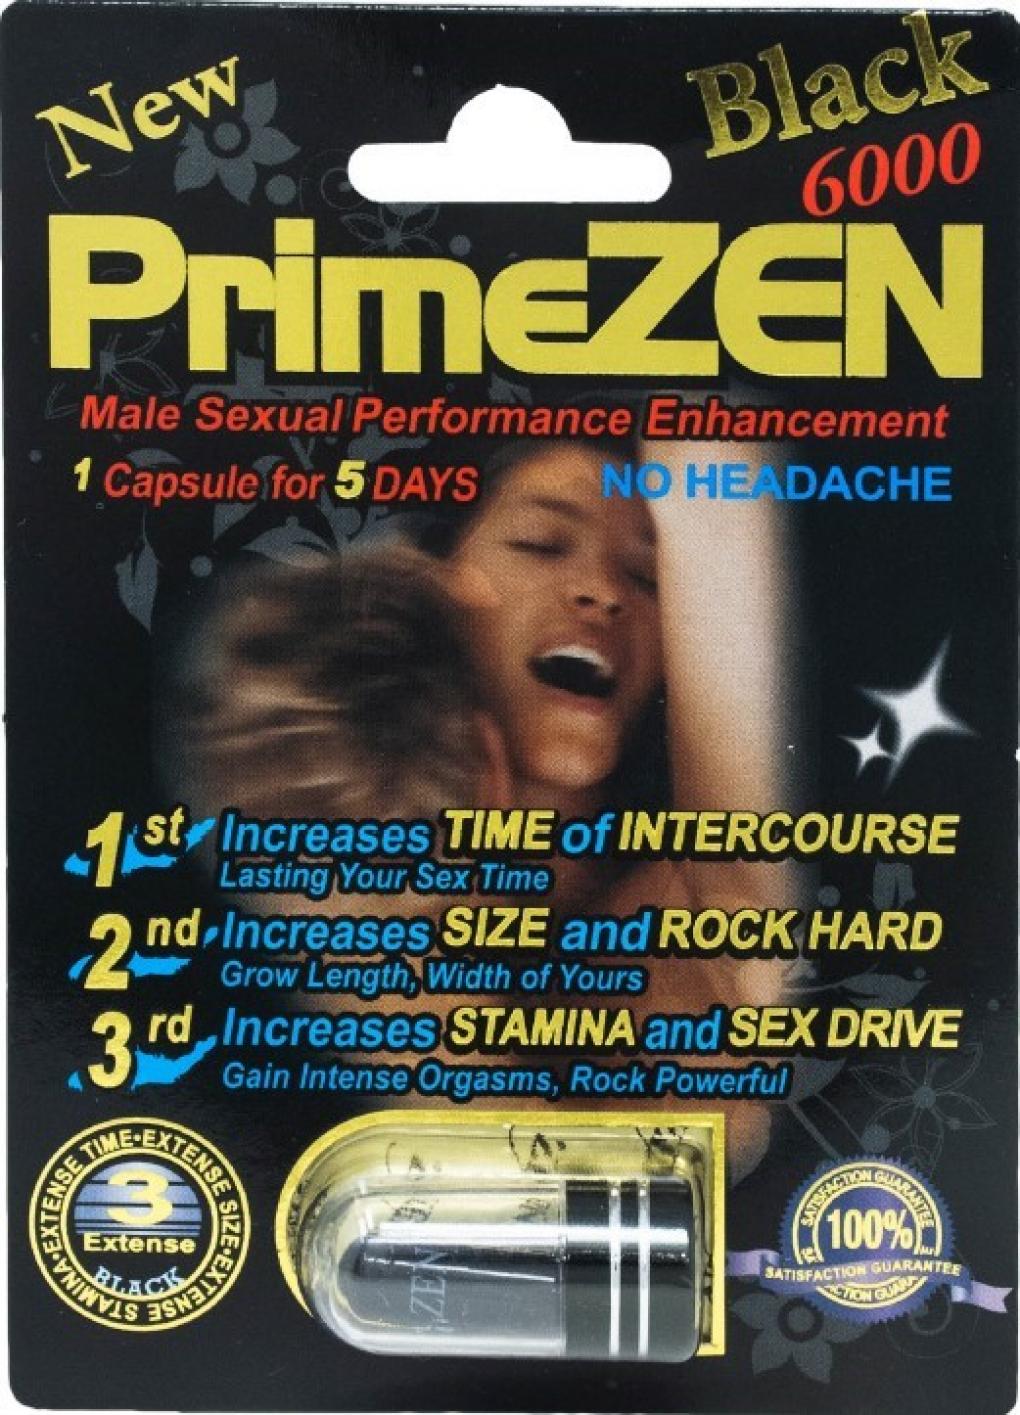 Billede af det ulovlige produkt: PrimeZen Black 6000